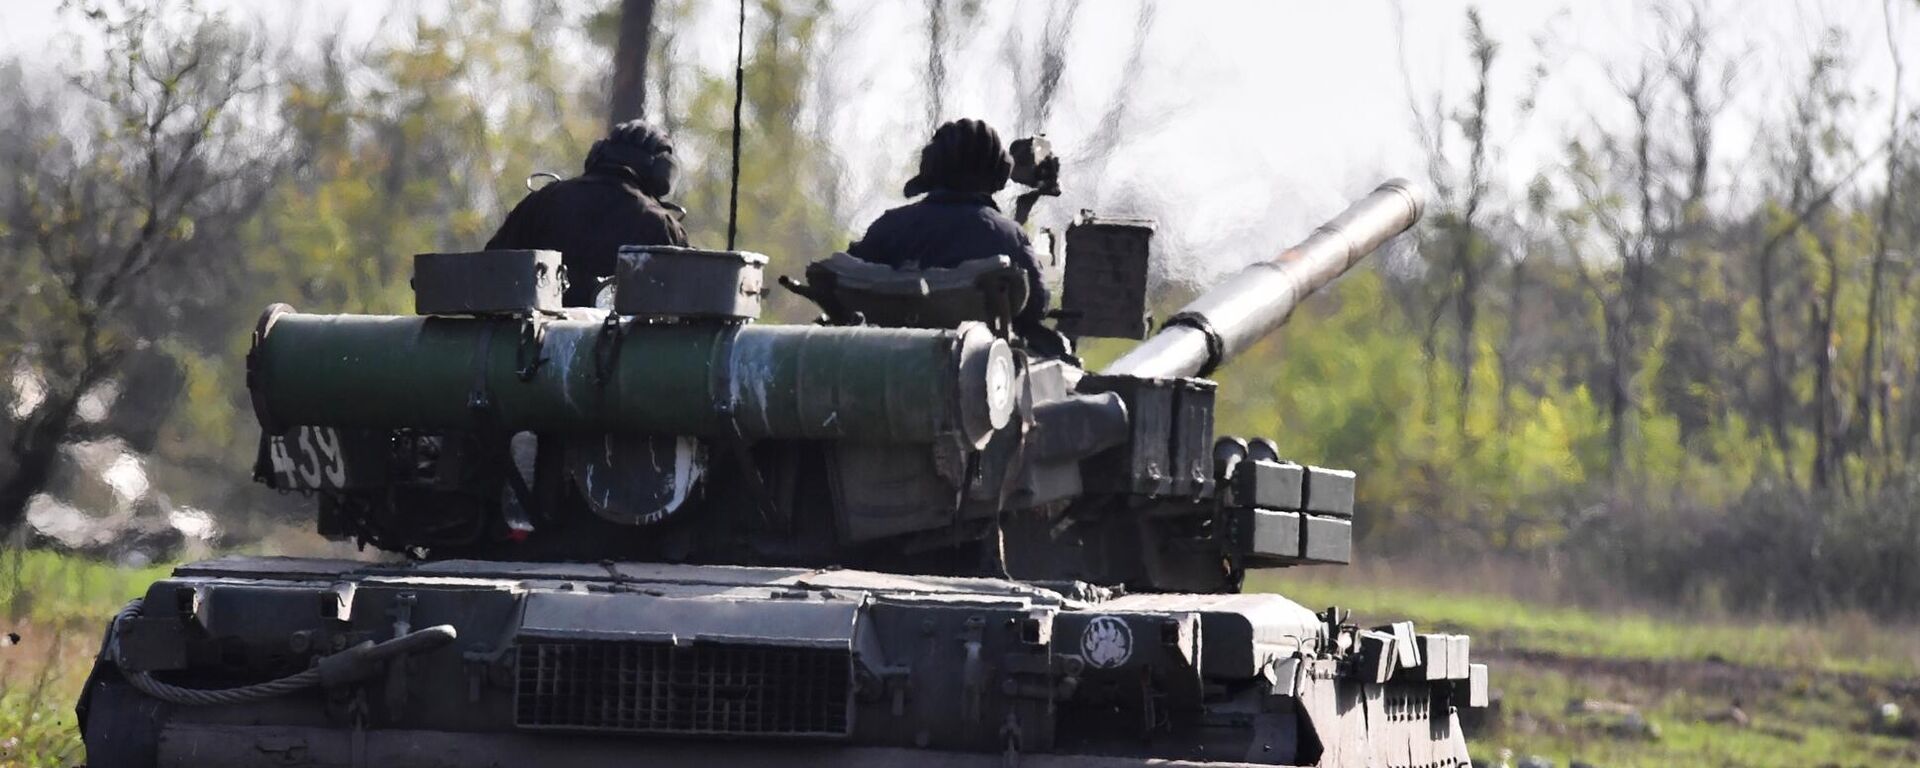 يتم إرسال دبابة تي-80 لإطلاق النار الحي في مواقع القوات المسلحة لأوكرانيا في منطقة دونيتسك - سبوتنيك عربي, 1920, 05.10.2022